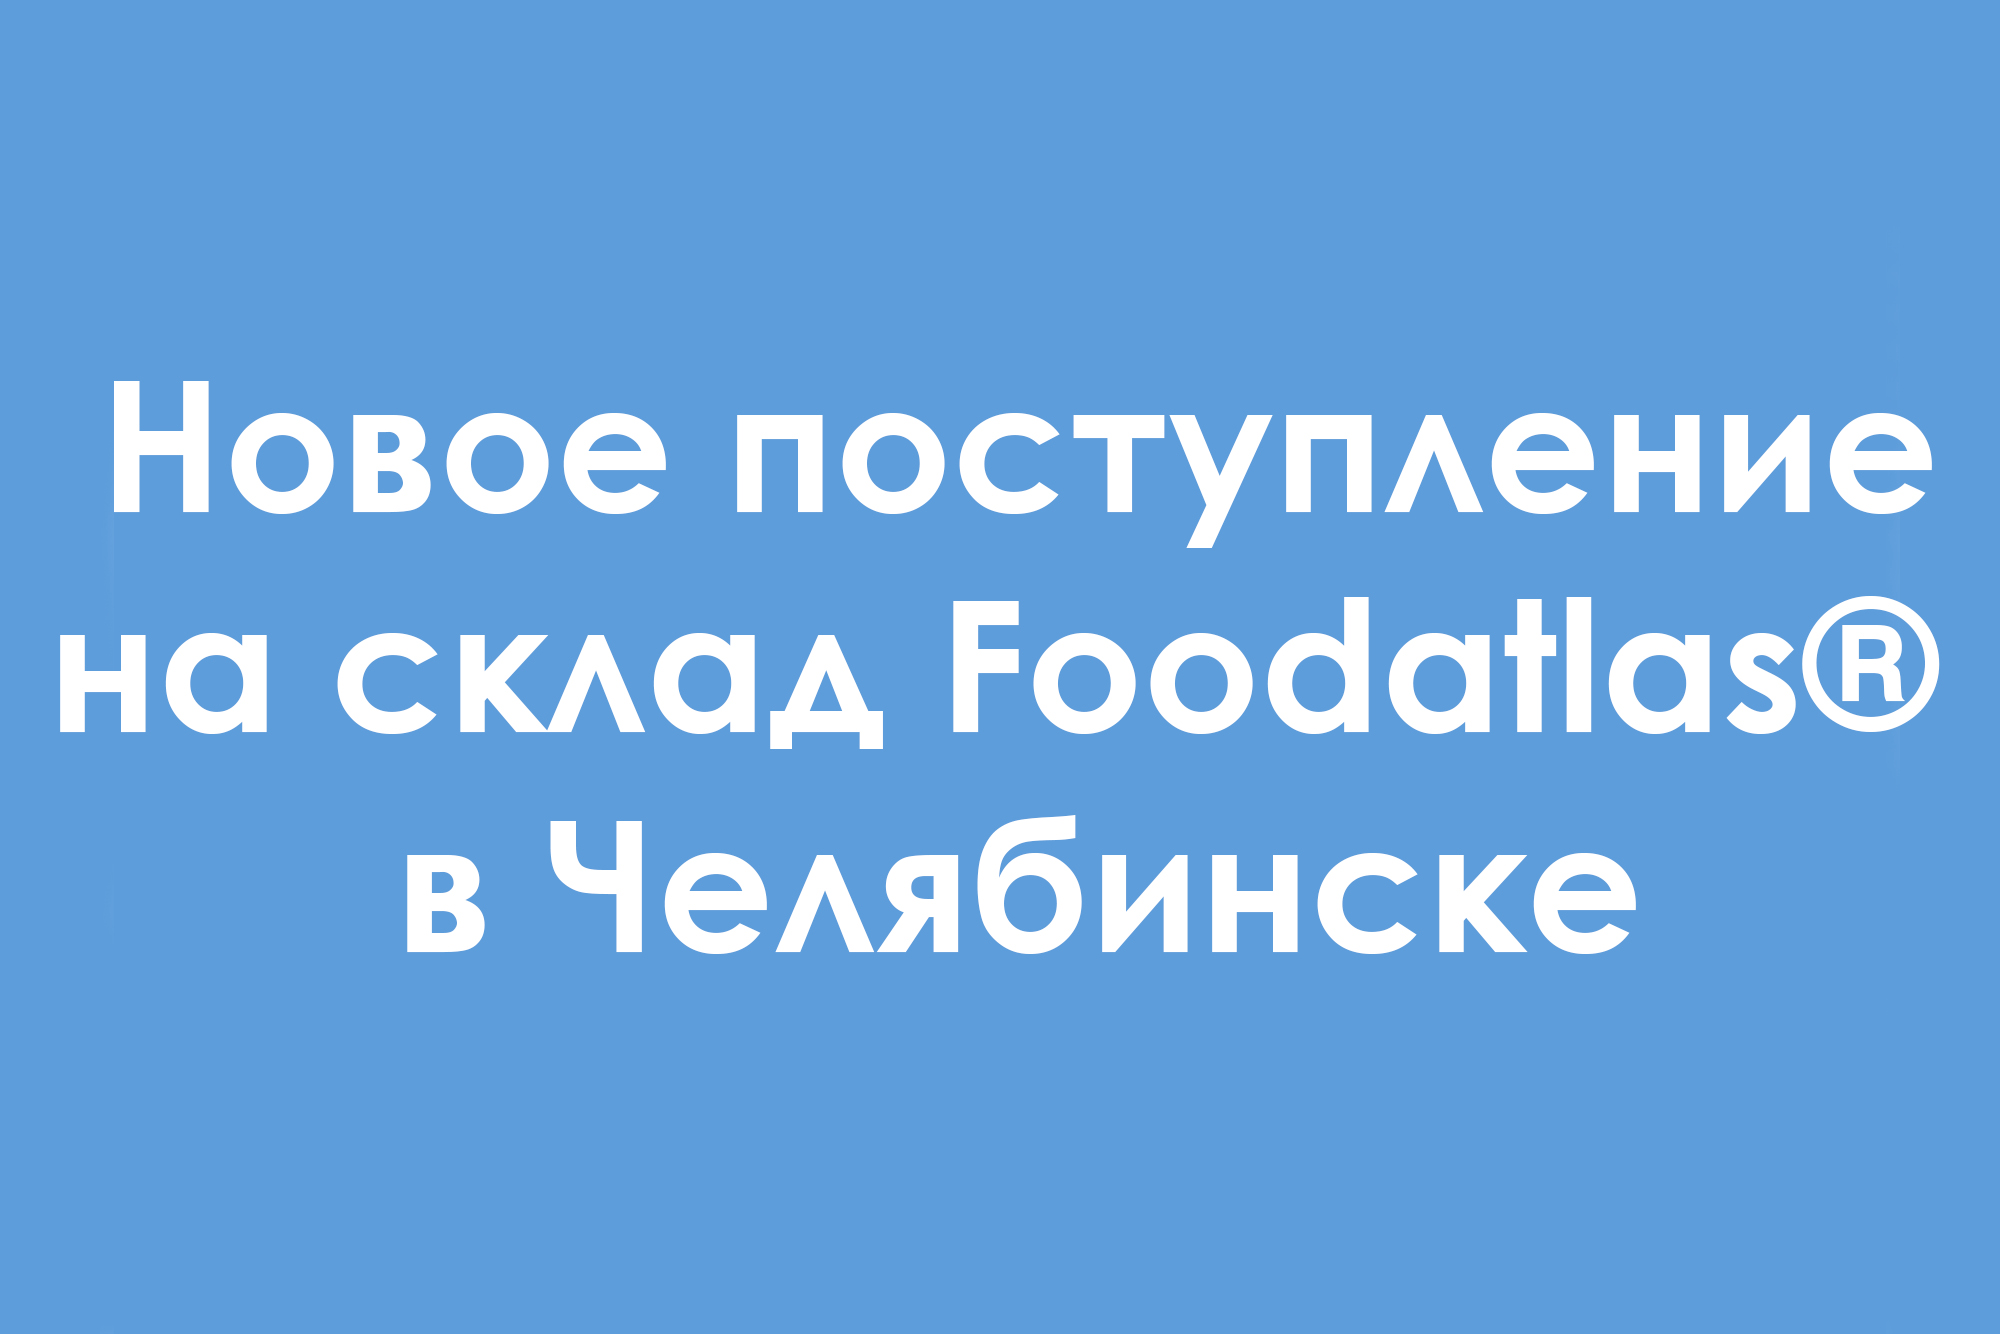 Новое поступление оборудования для мясоперерабатывающих и пельменных производств на склад Foodatlas® в Челябинске 